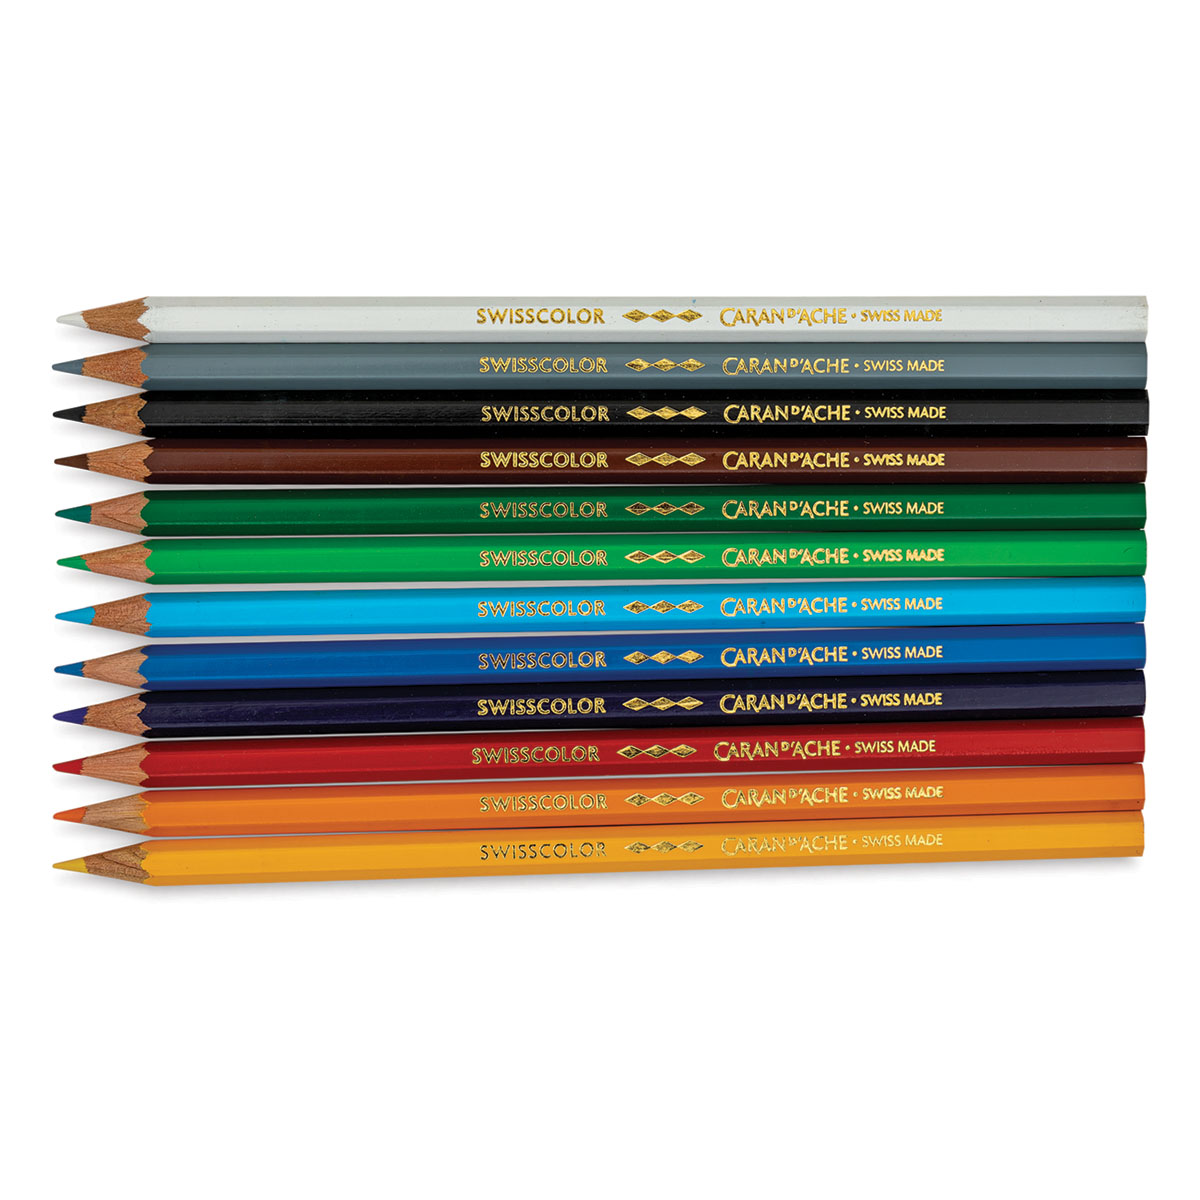 Caran D'Ache Swisscolor Water-Soluble Colour Pencils – The